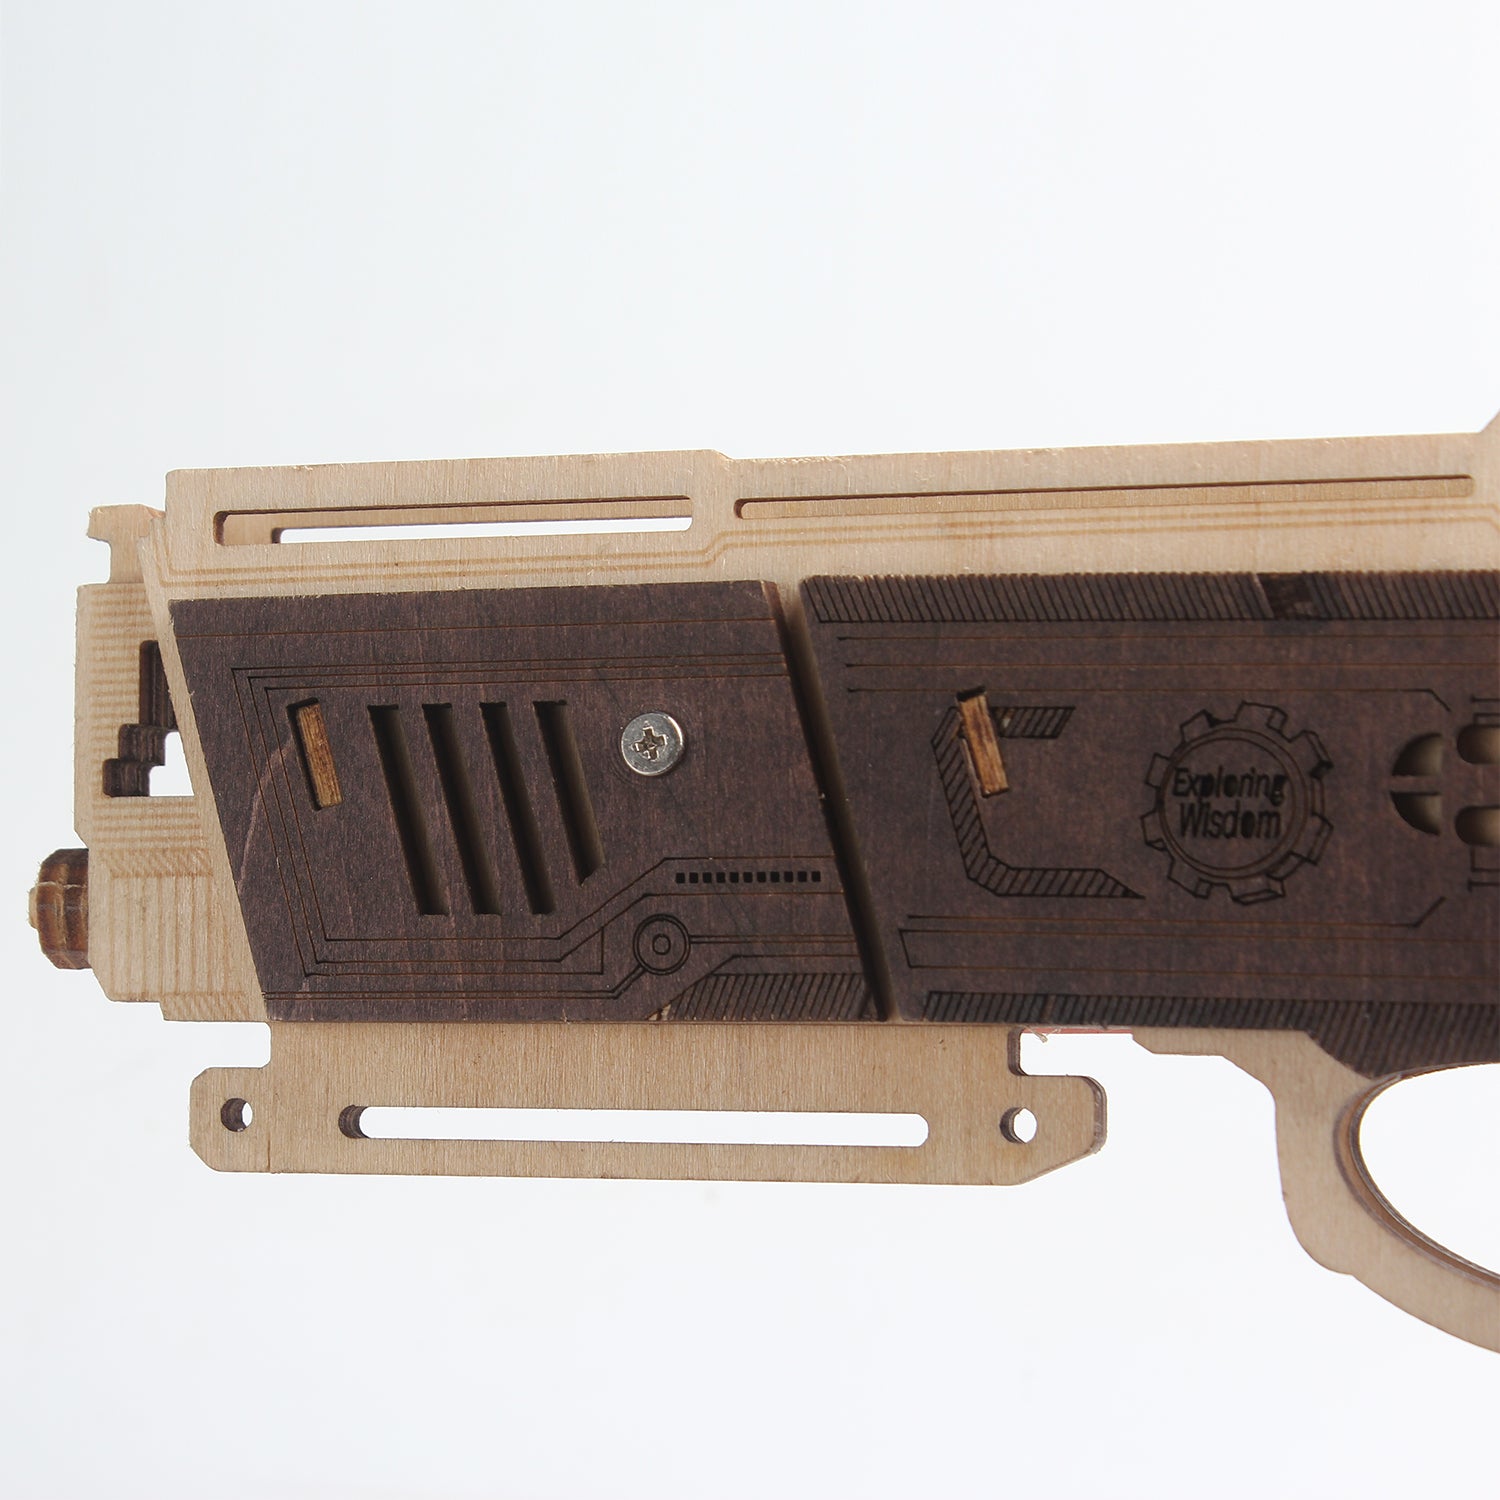 TSZH 009 DIY Guns Kit |Birthday Gift | Hobby